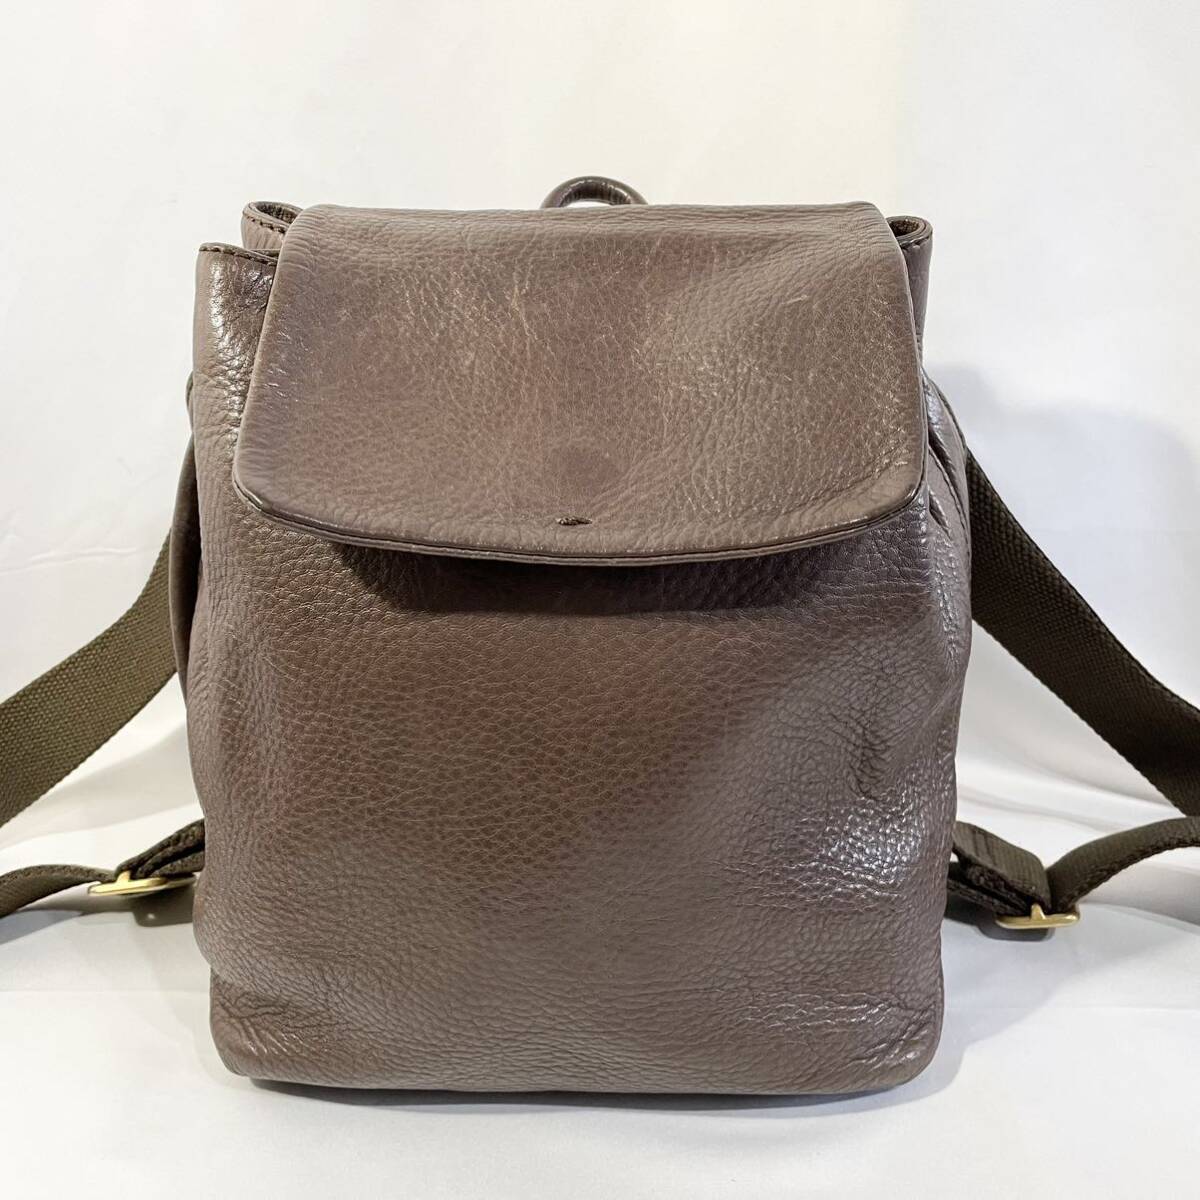 【美品】 正規品 イタリア製 ヒロフ レザー 革 ミニリュック バックパック ブラウン 茶色 リュックサック フラップ式 かばん 鞄 HIROFU